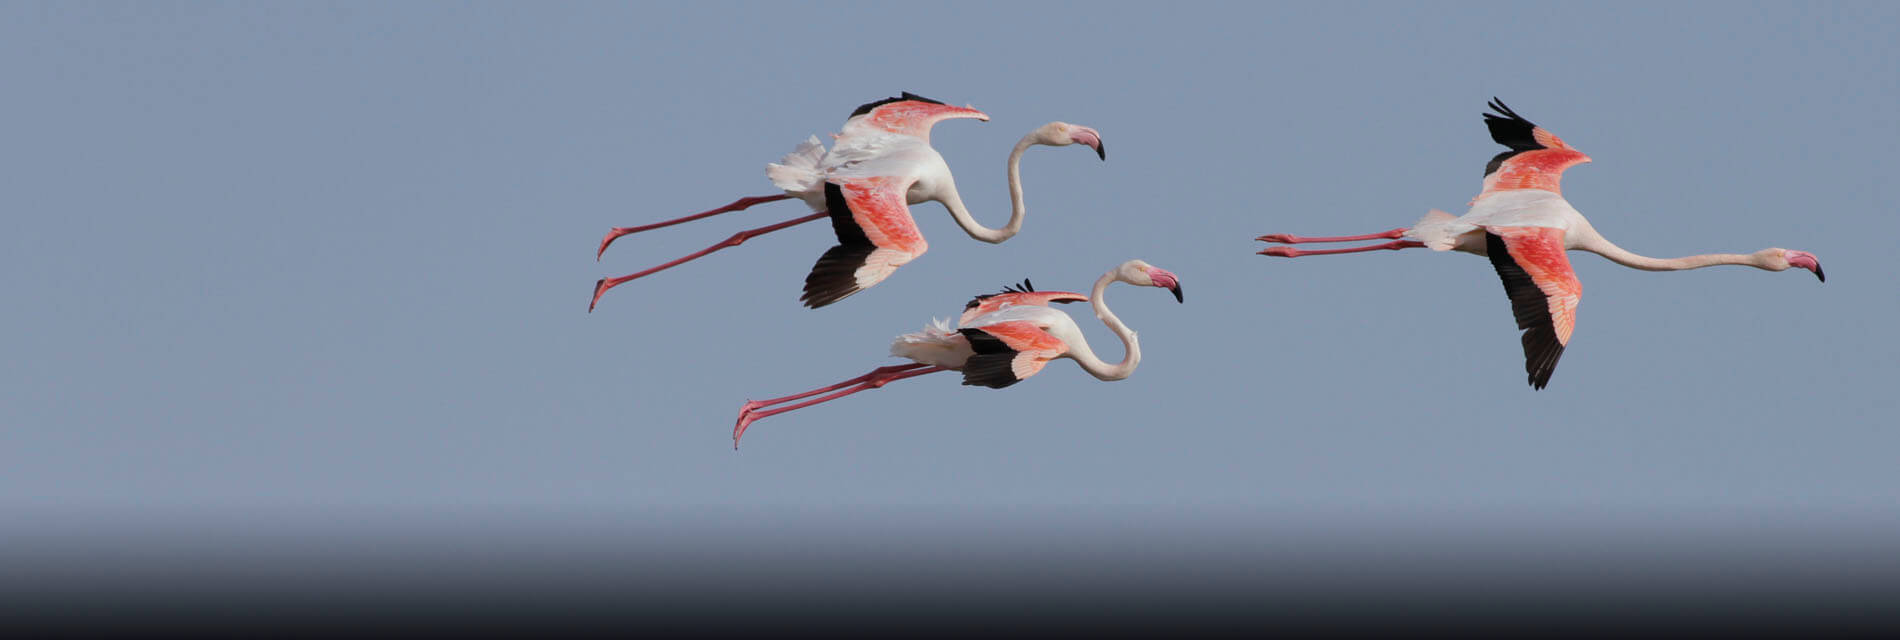 Wild flamingos in fuente de piedra lagoon